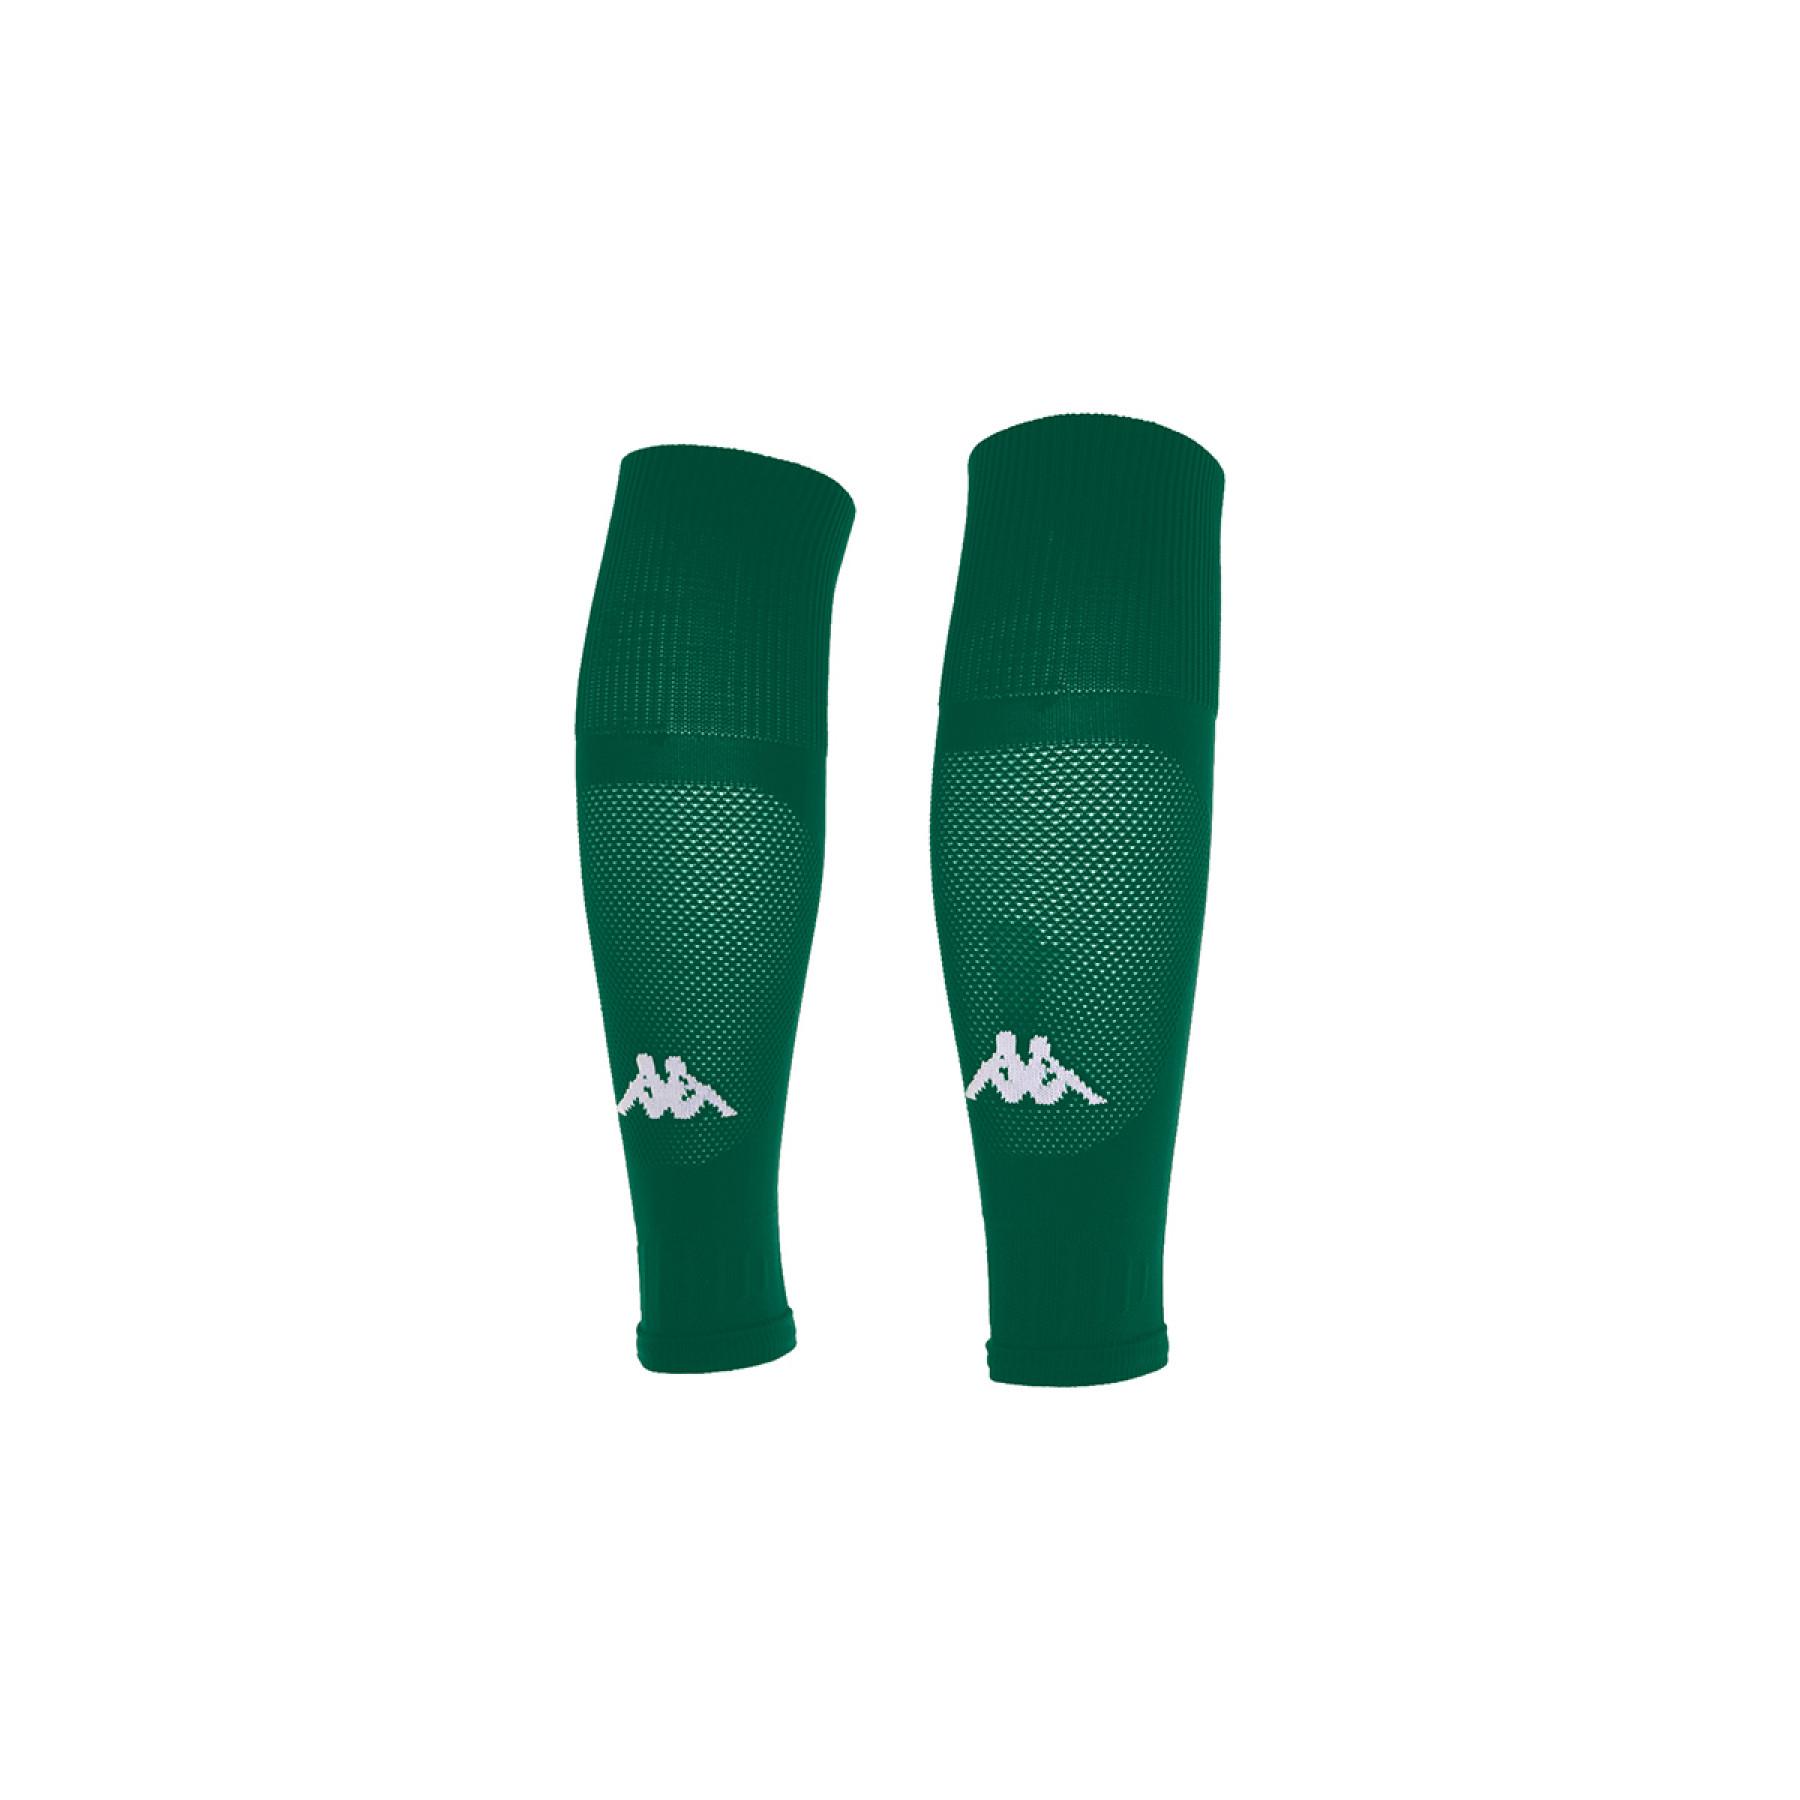 Hoofdkwartier Malaise Kano Footless socks Kappa Spolf pro - Socks - Women's volleyball wear -  Volleyball wear